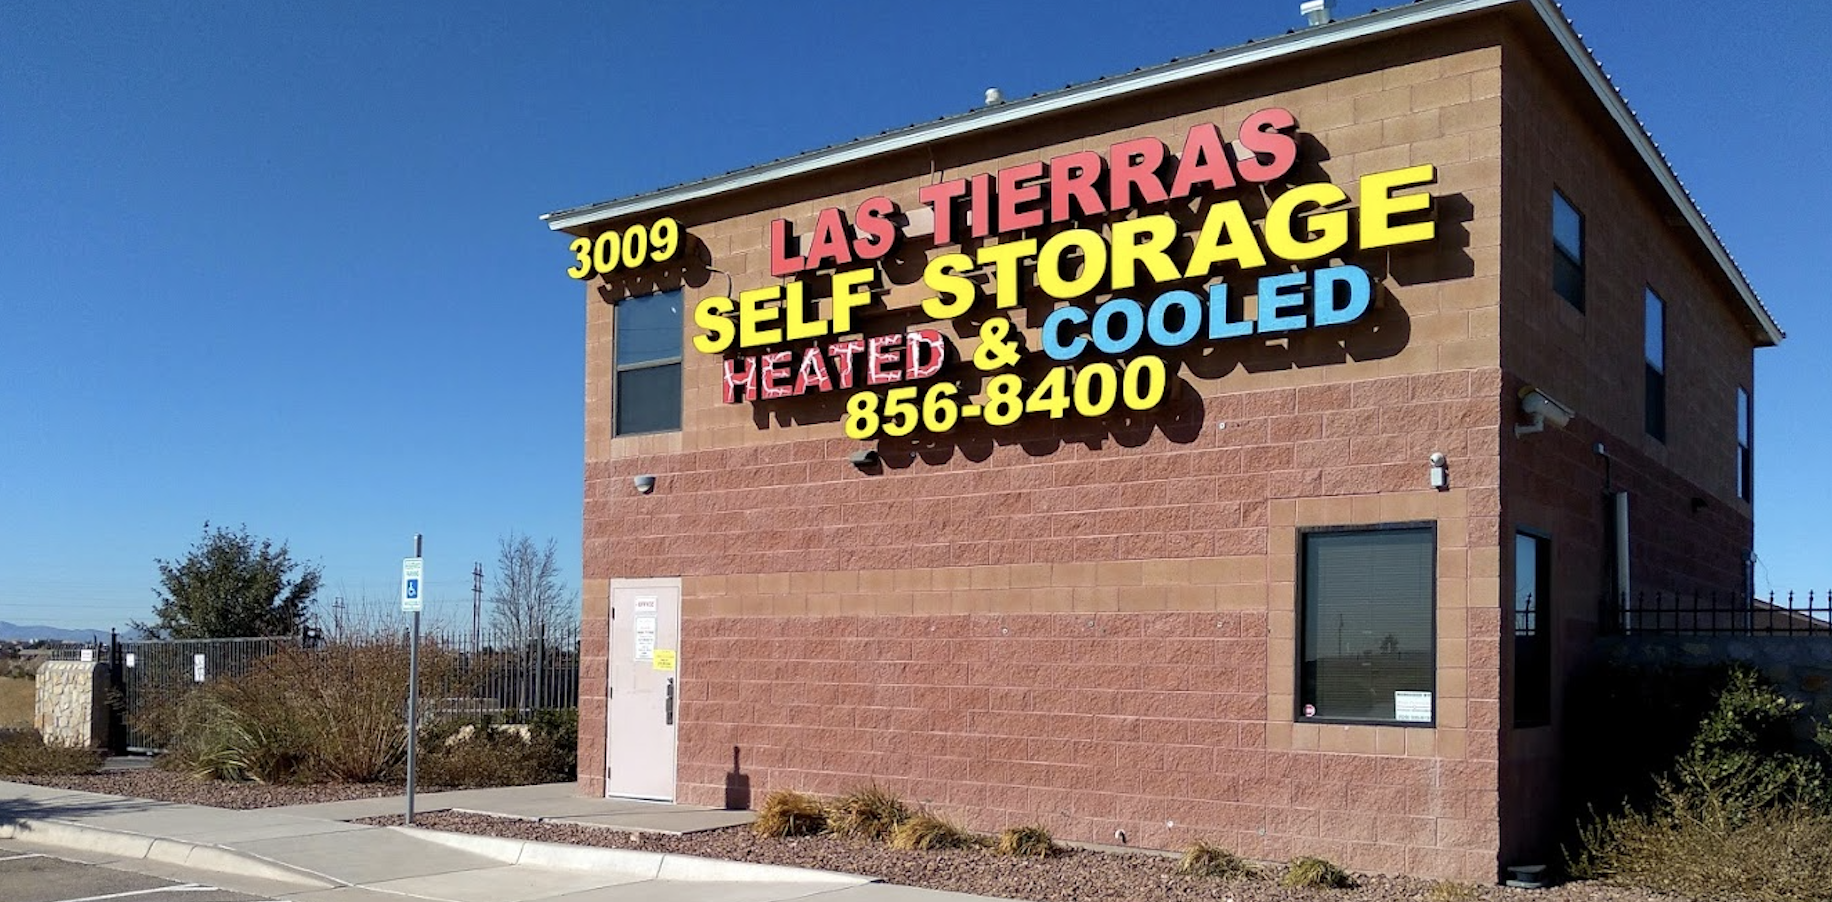 Las Tierras Self Storage in El Paso, TX